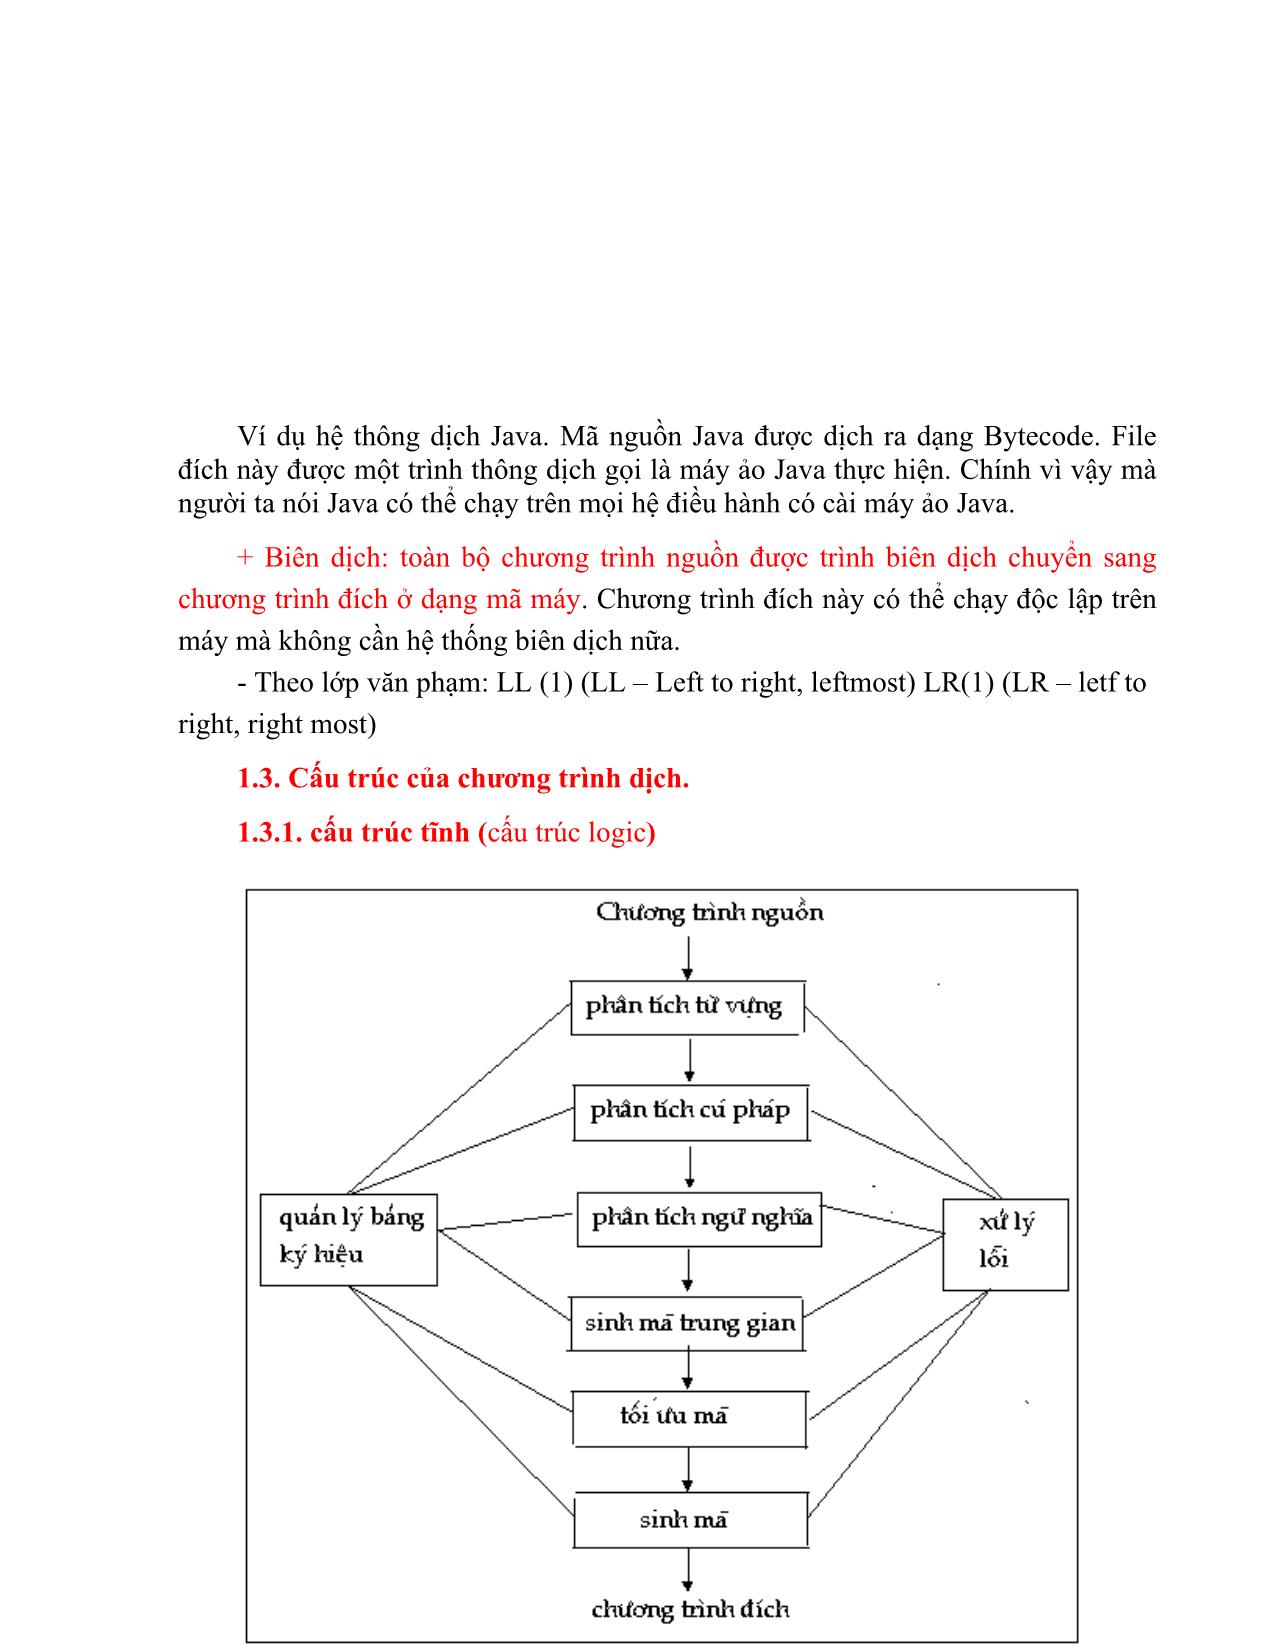 Giáo trình môn Chương trình dịch (Phần 1) trang 7